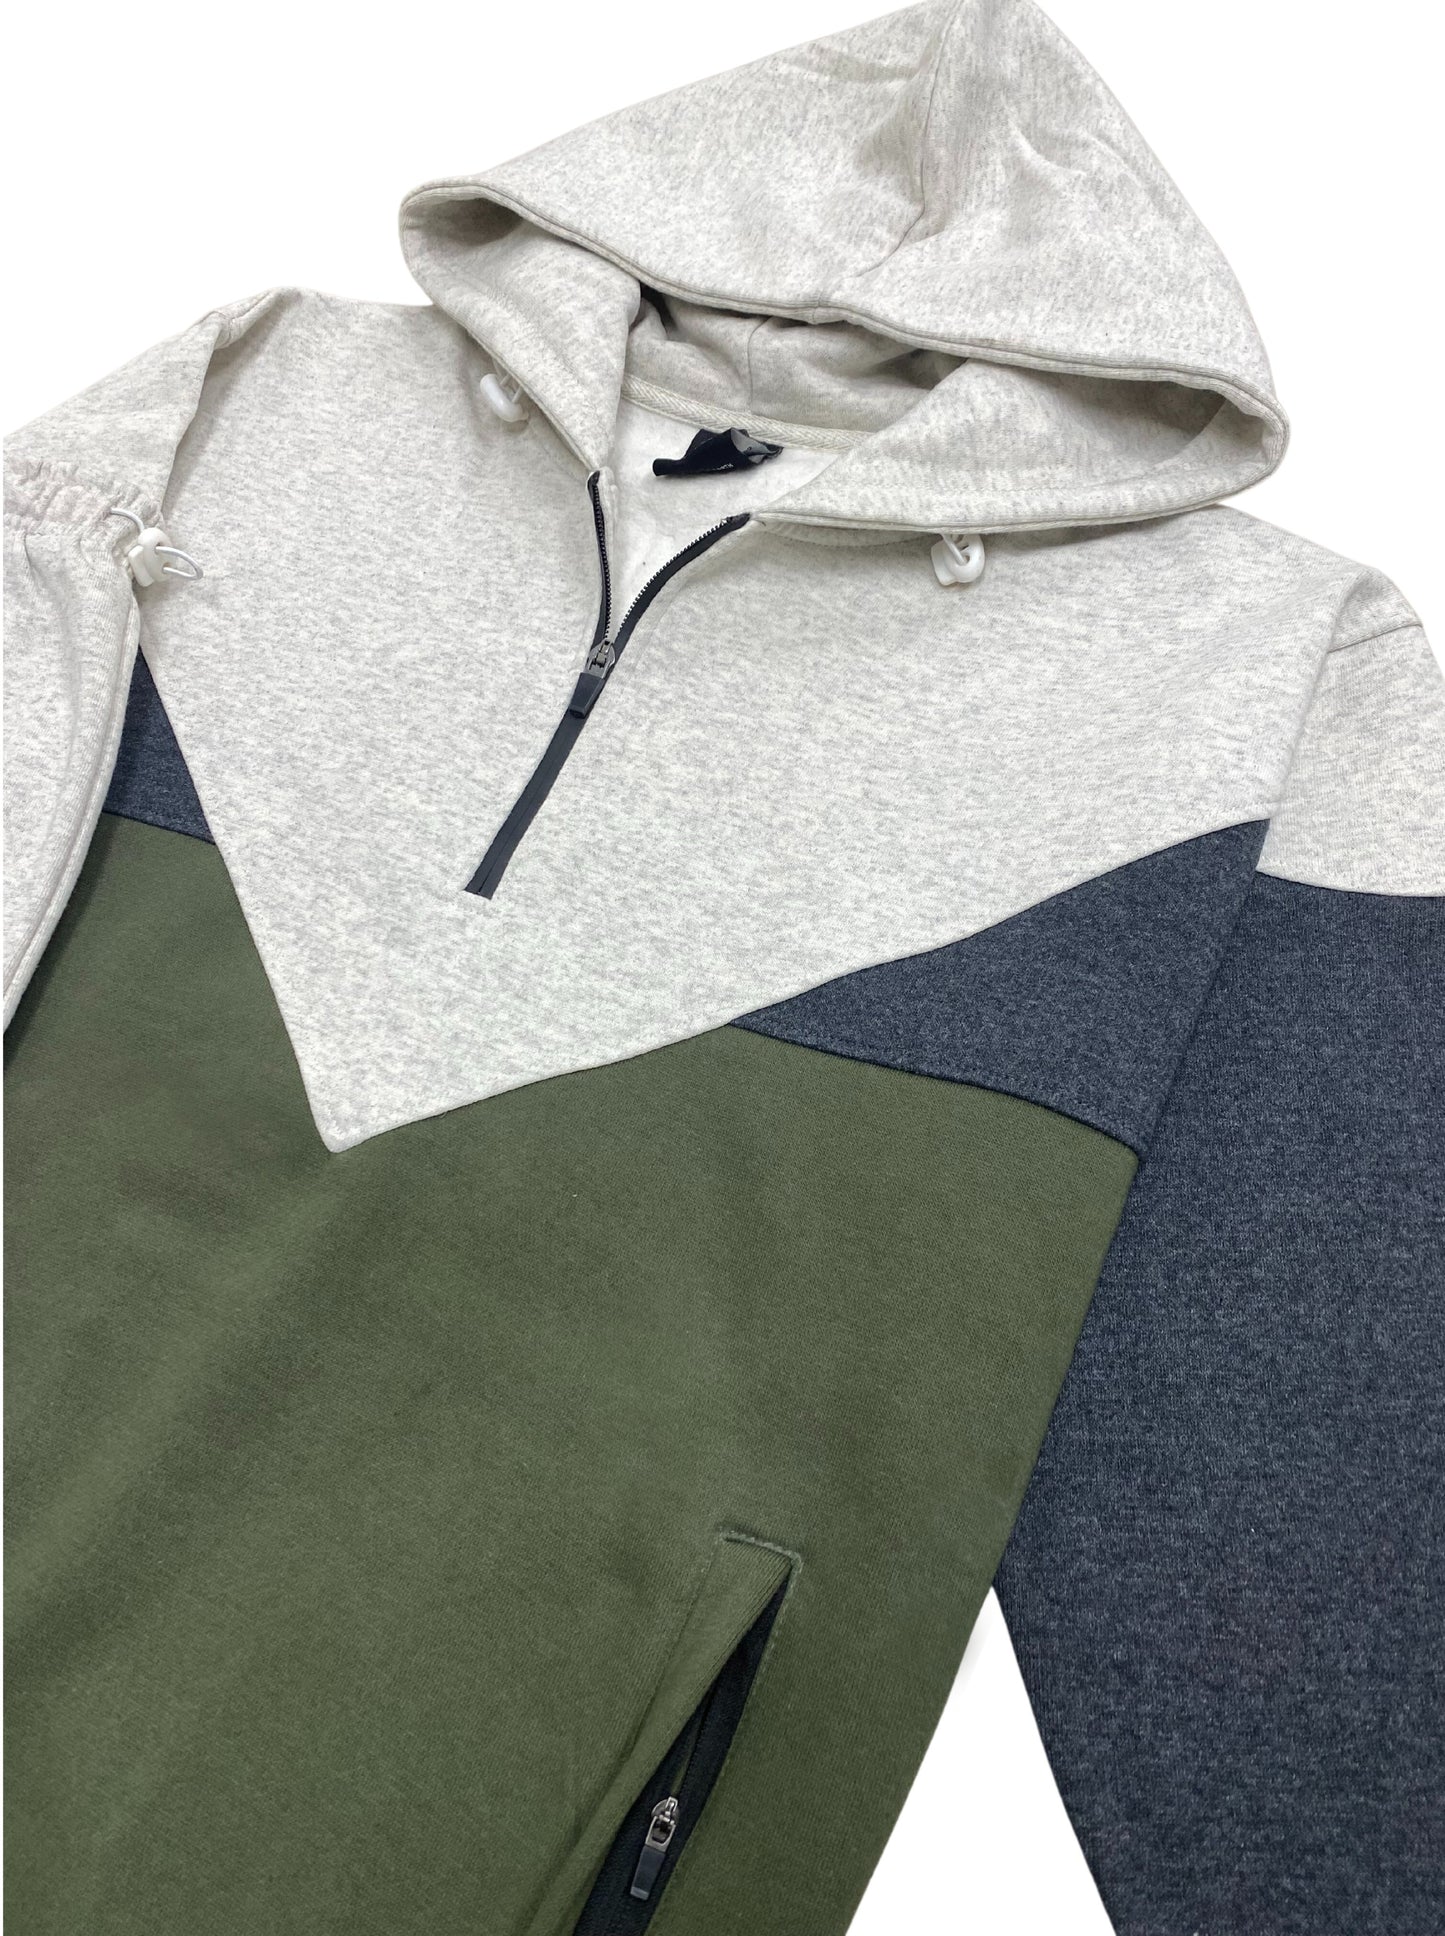 Men’s 2-Piece Quarter Zip Fleece Hoodie Sports Fleece Sweatsuit Heavy Winter Sweat Jacket & Fleece Pants